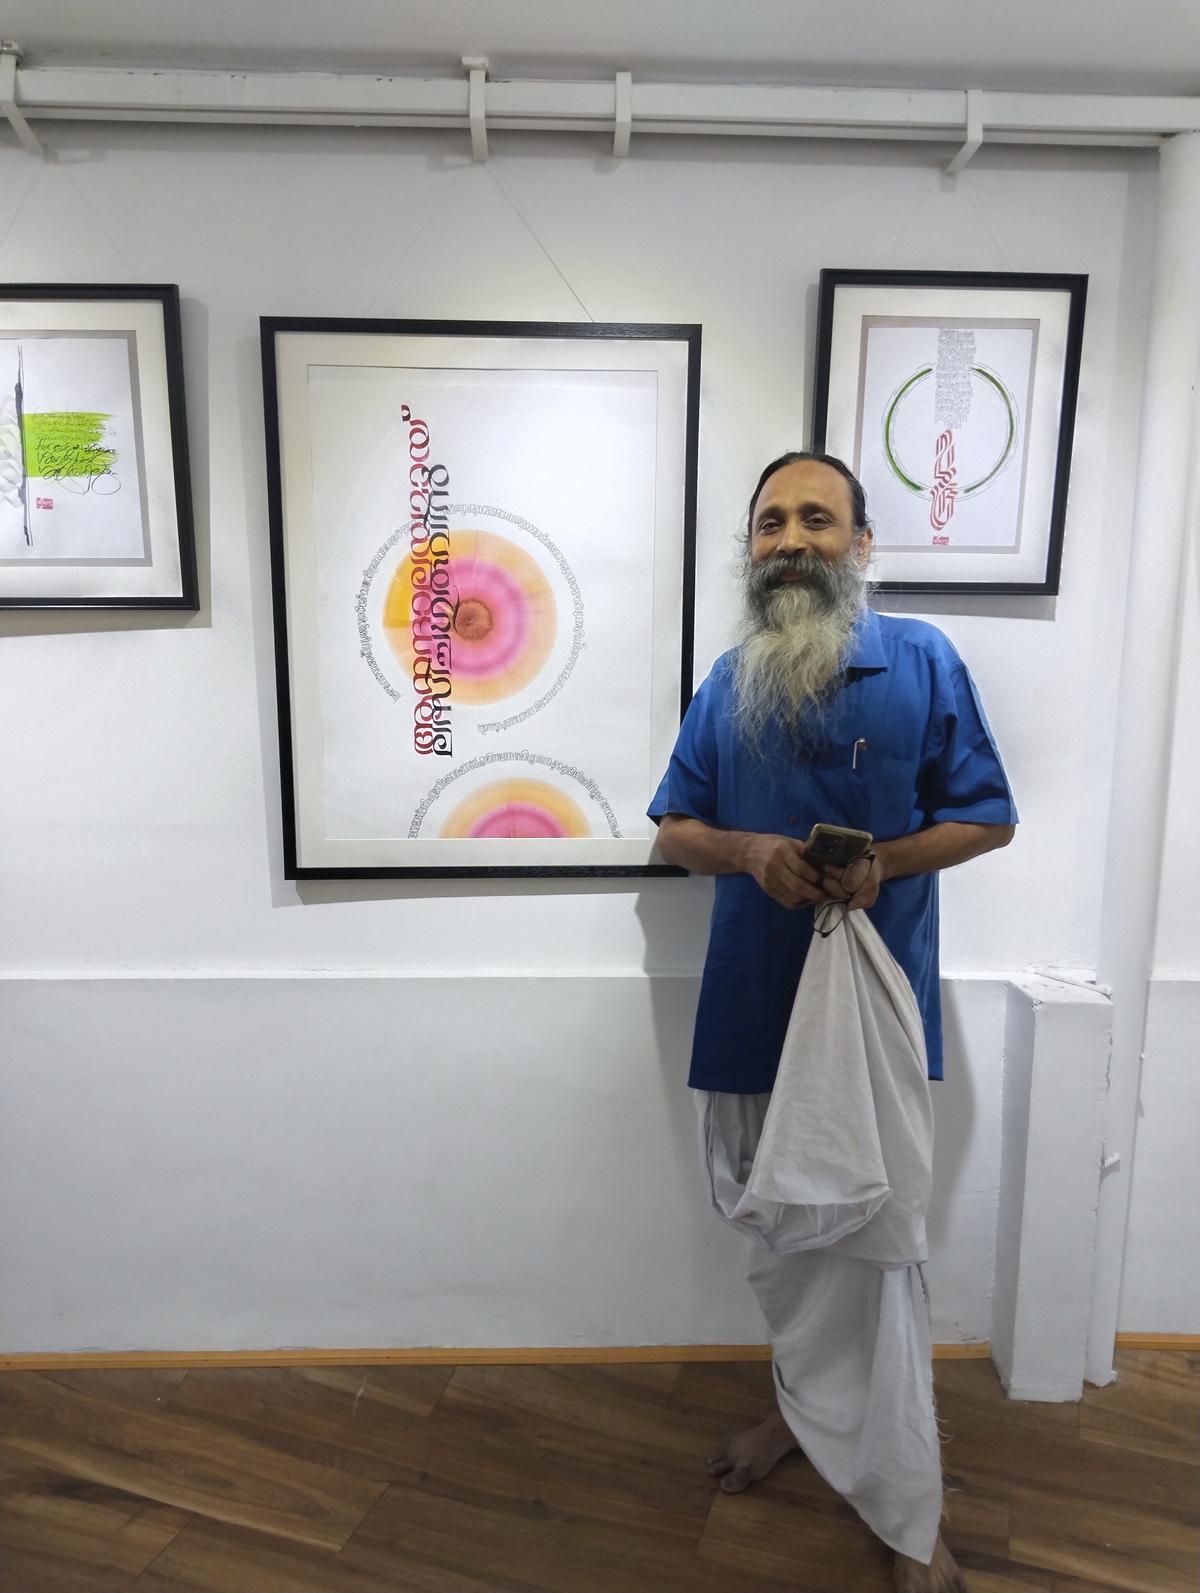 Calligrapher artist Bhattathiri exhibits works based on Kumaran Asan's poems at Cha Ta Tha Pa, his gallery for Malayalam calligraphy, in Thiruvananthapuram